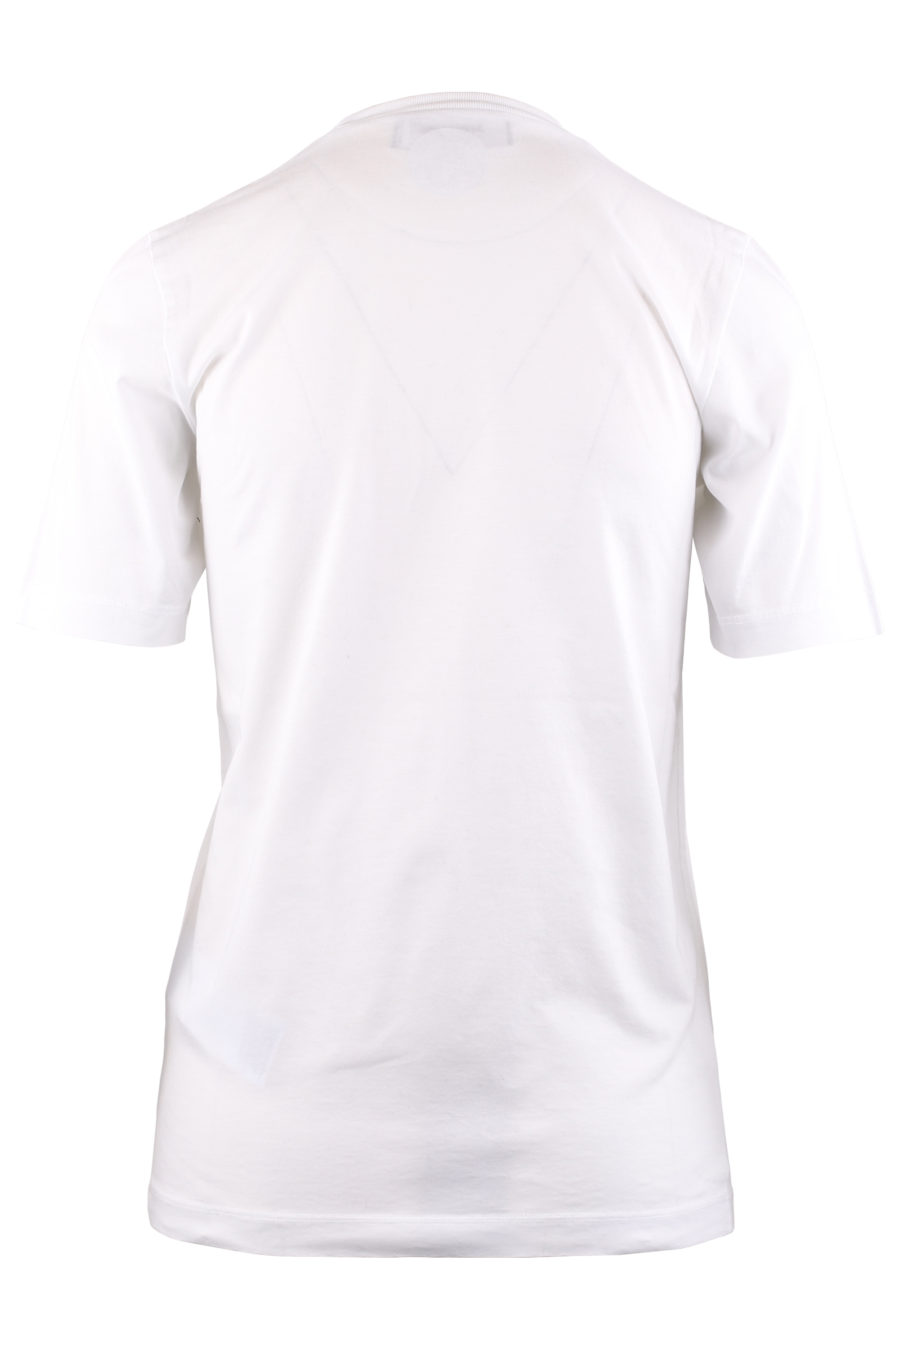 Camiseta blanca con logo negro "Icon" - 23c551c0a8e0096e9e070b0d9beec3c1db2265e1